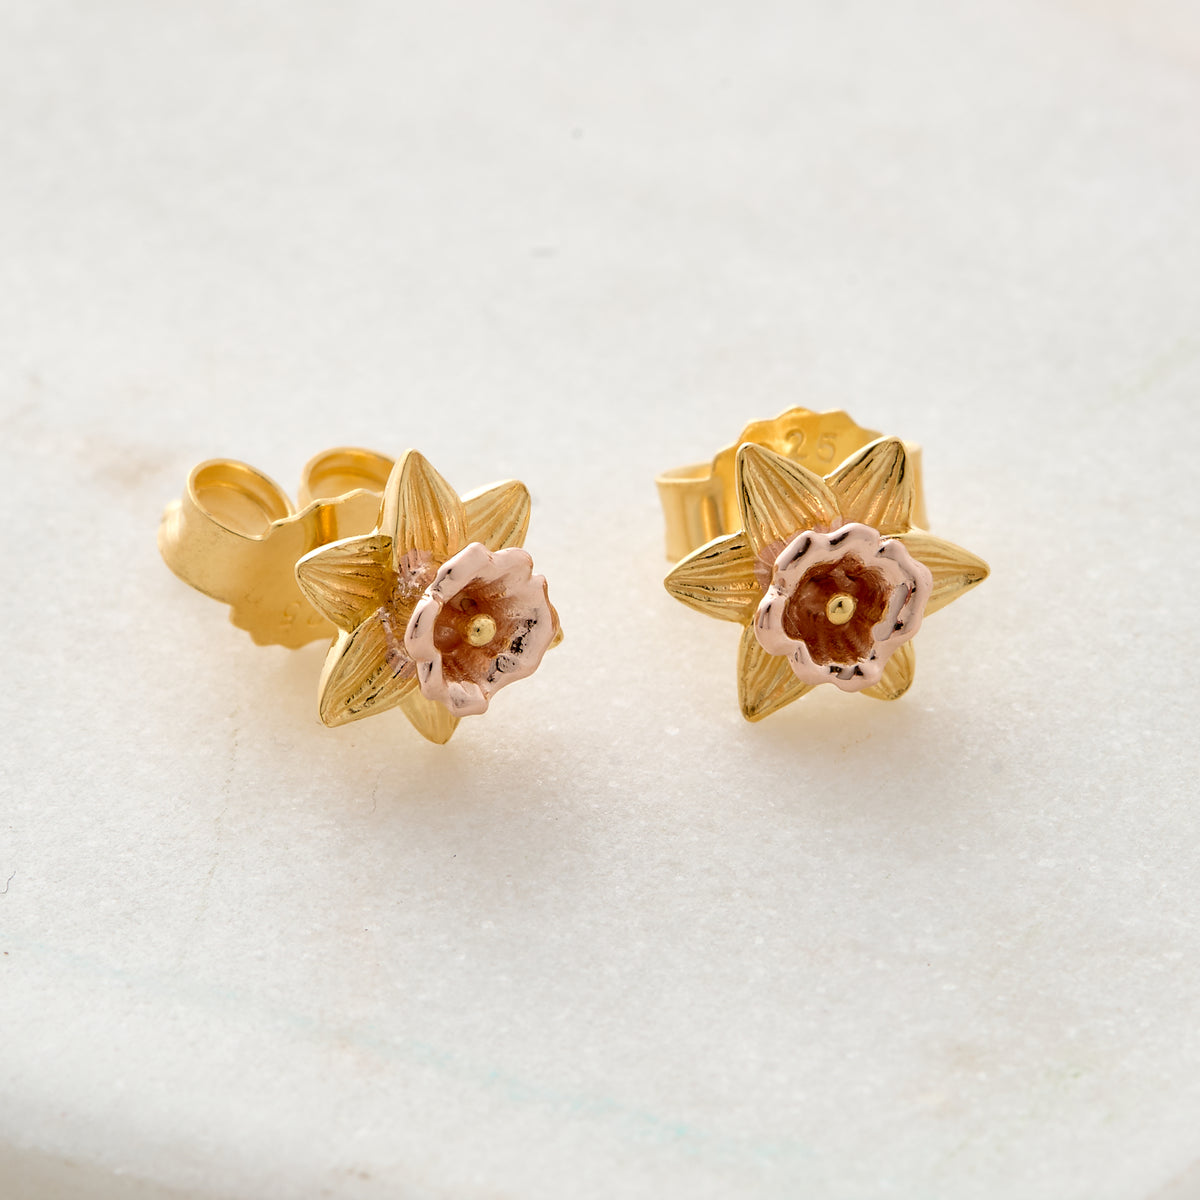 gold daffodil stud earrings scarlett jewellery 18ct gold vermeil on silver